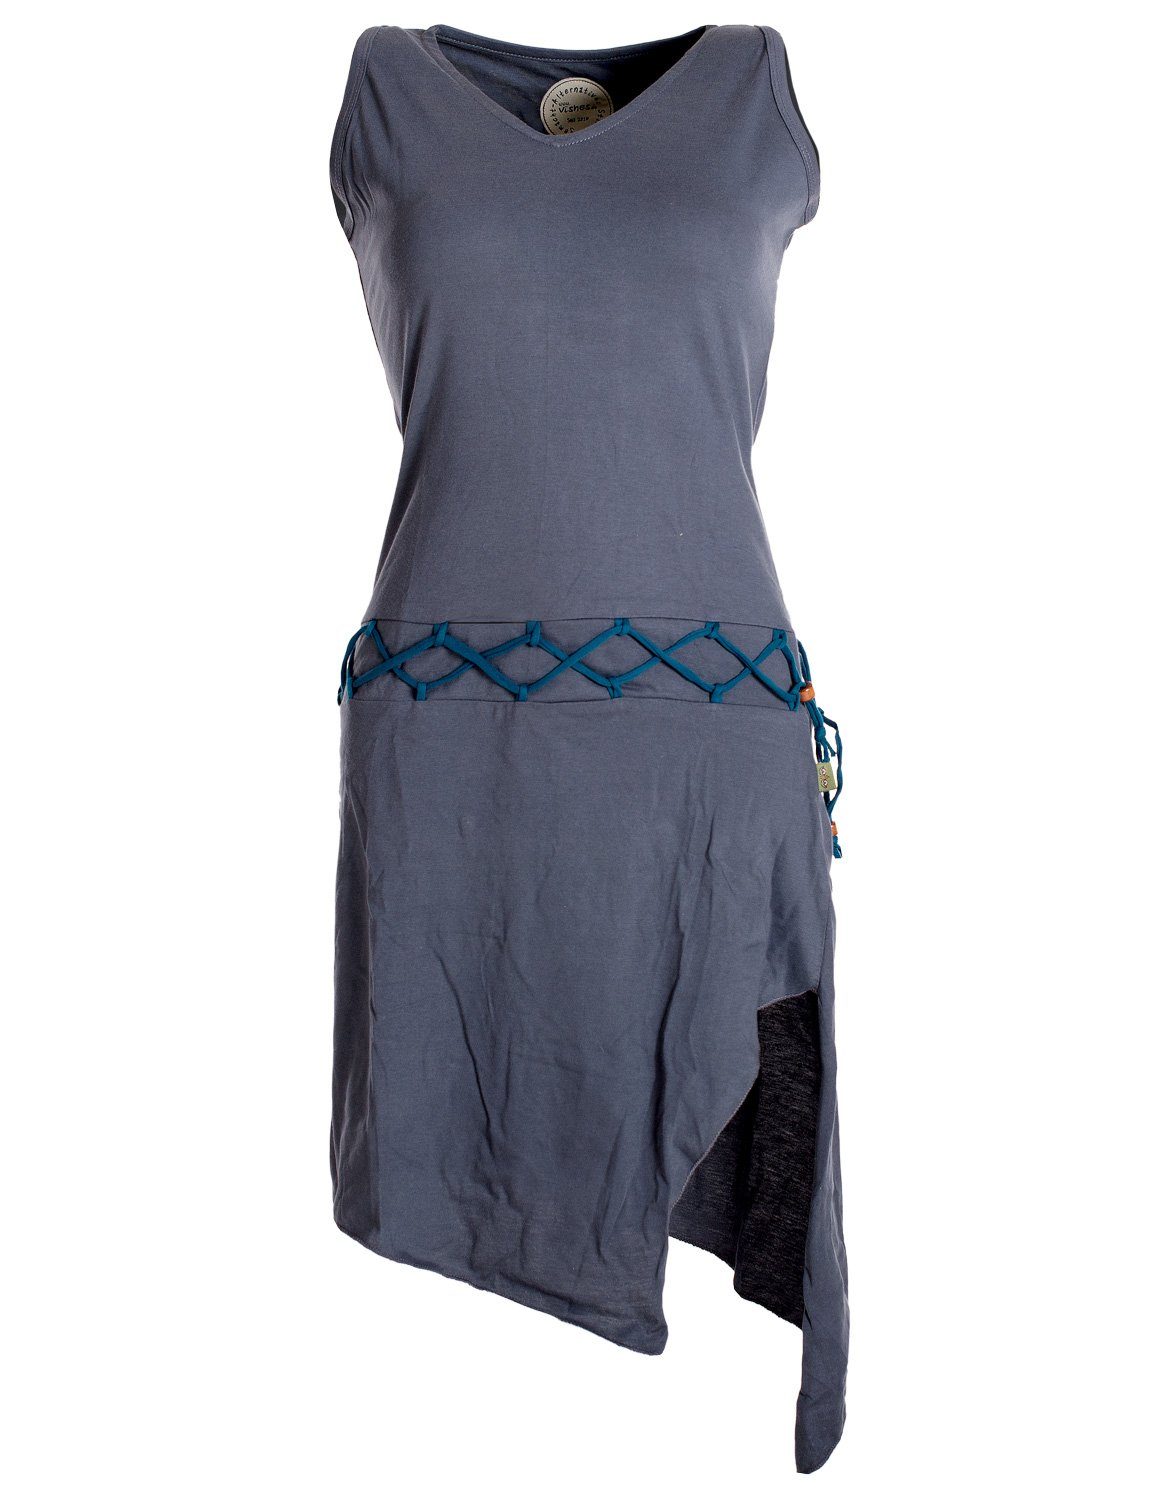 Vishes Sommerkleid Ärmelloses Kleid asymmetrisch Beinausschnitt Gürtel-Schnürung Hippie, Boho, Goa Elfen Style grau | Sommerkleider